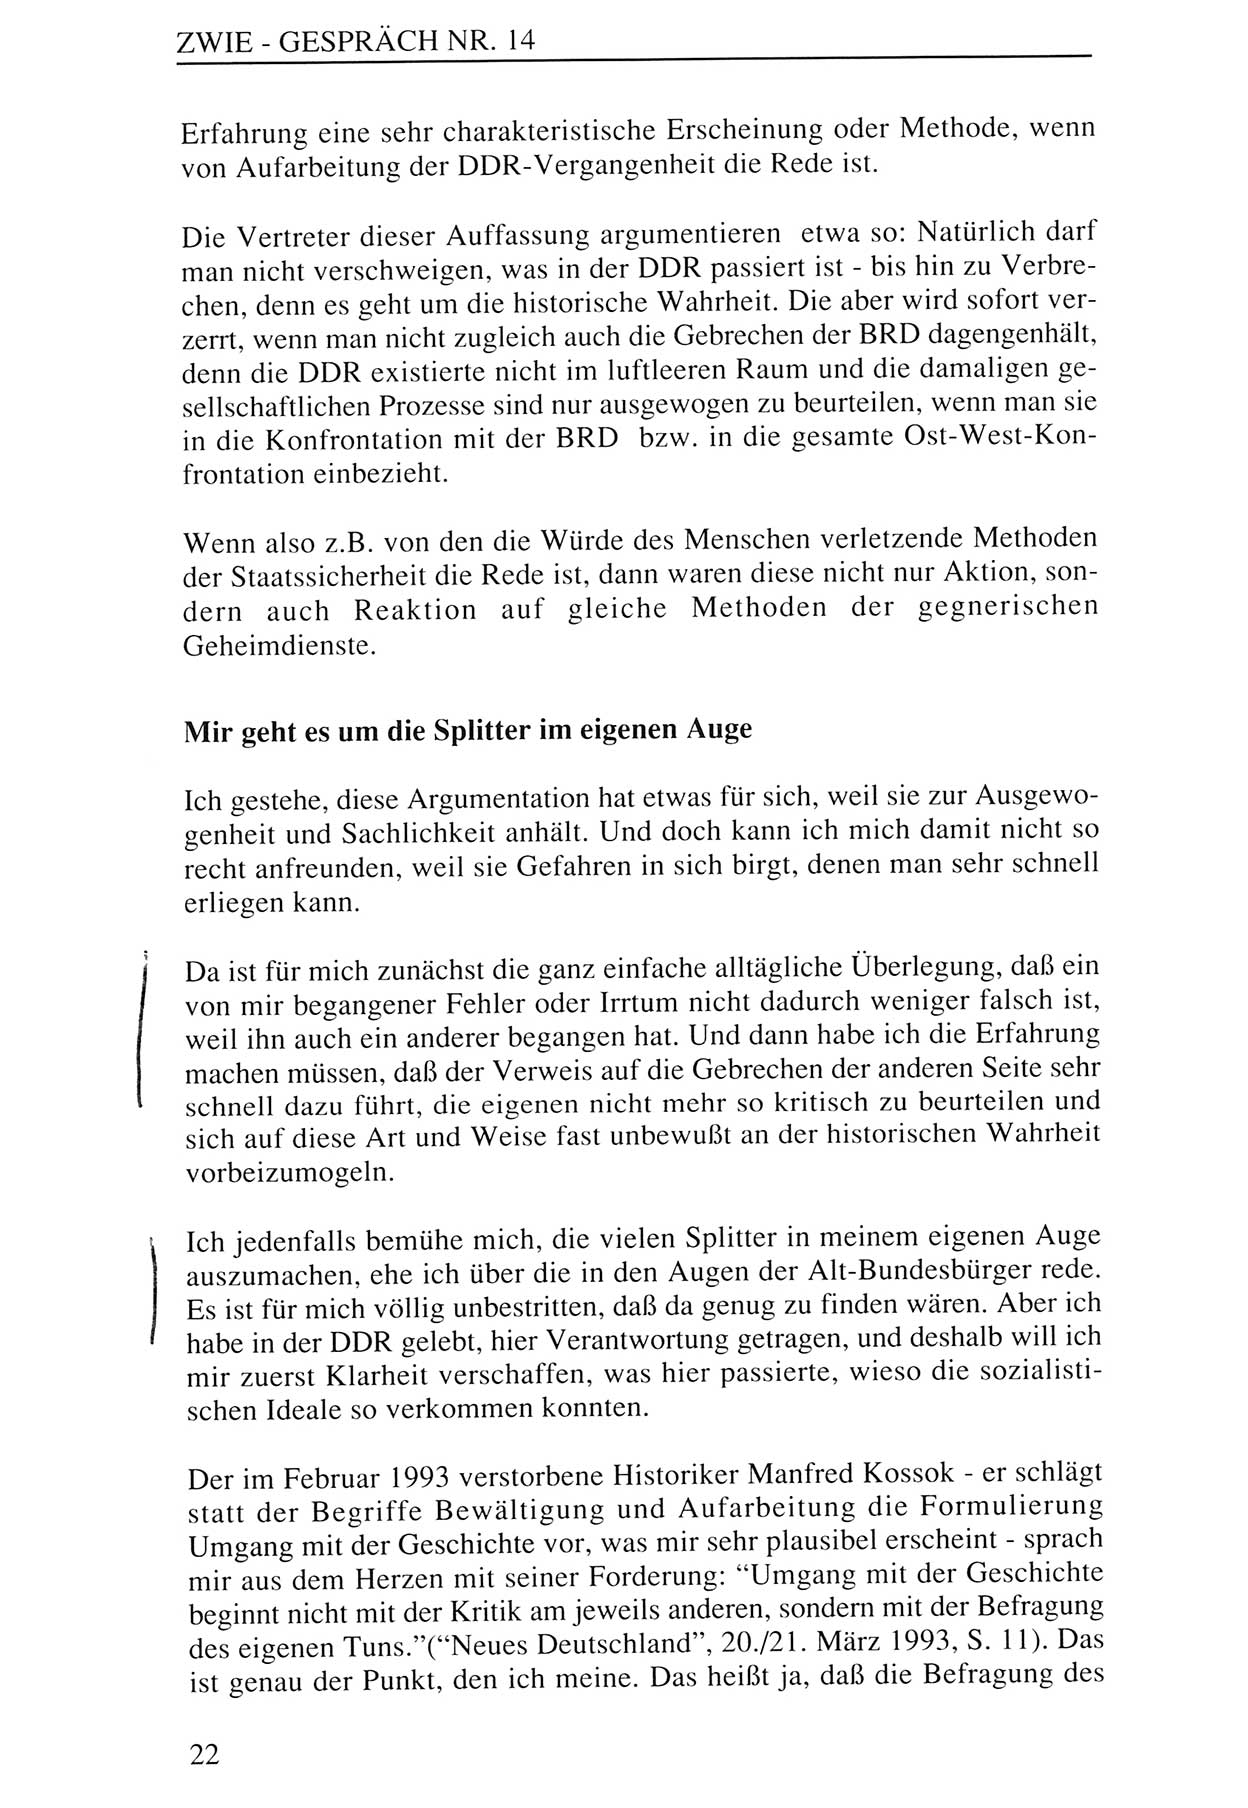 Zwie-Gespräch, Beiträge zur Aufarbeitung der Staatssicherheits-Vergangenheit [Deutsche Demokratische Republik (DDR)], Ausgabe Nr. 14, Berlin 1993, Seite 22 (Zwie-Gespr. Ausg. 14 1993, S. 22)